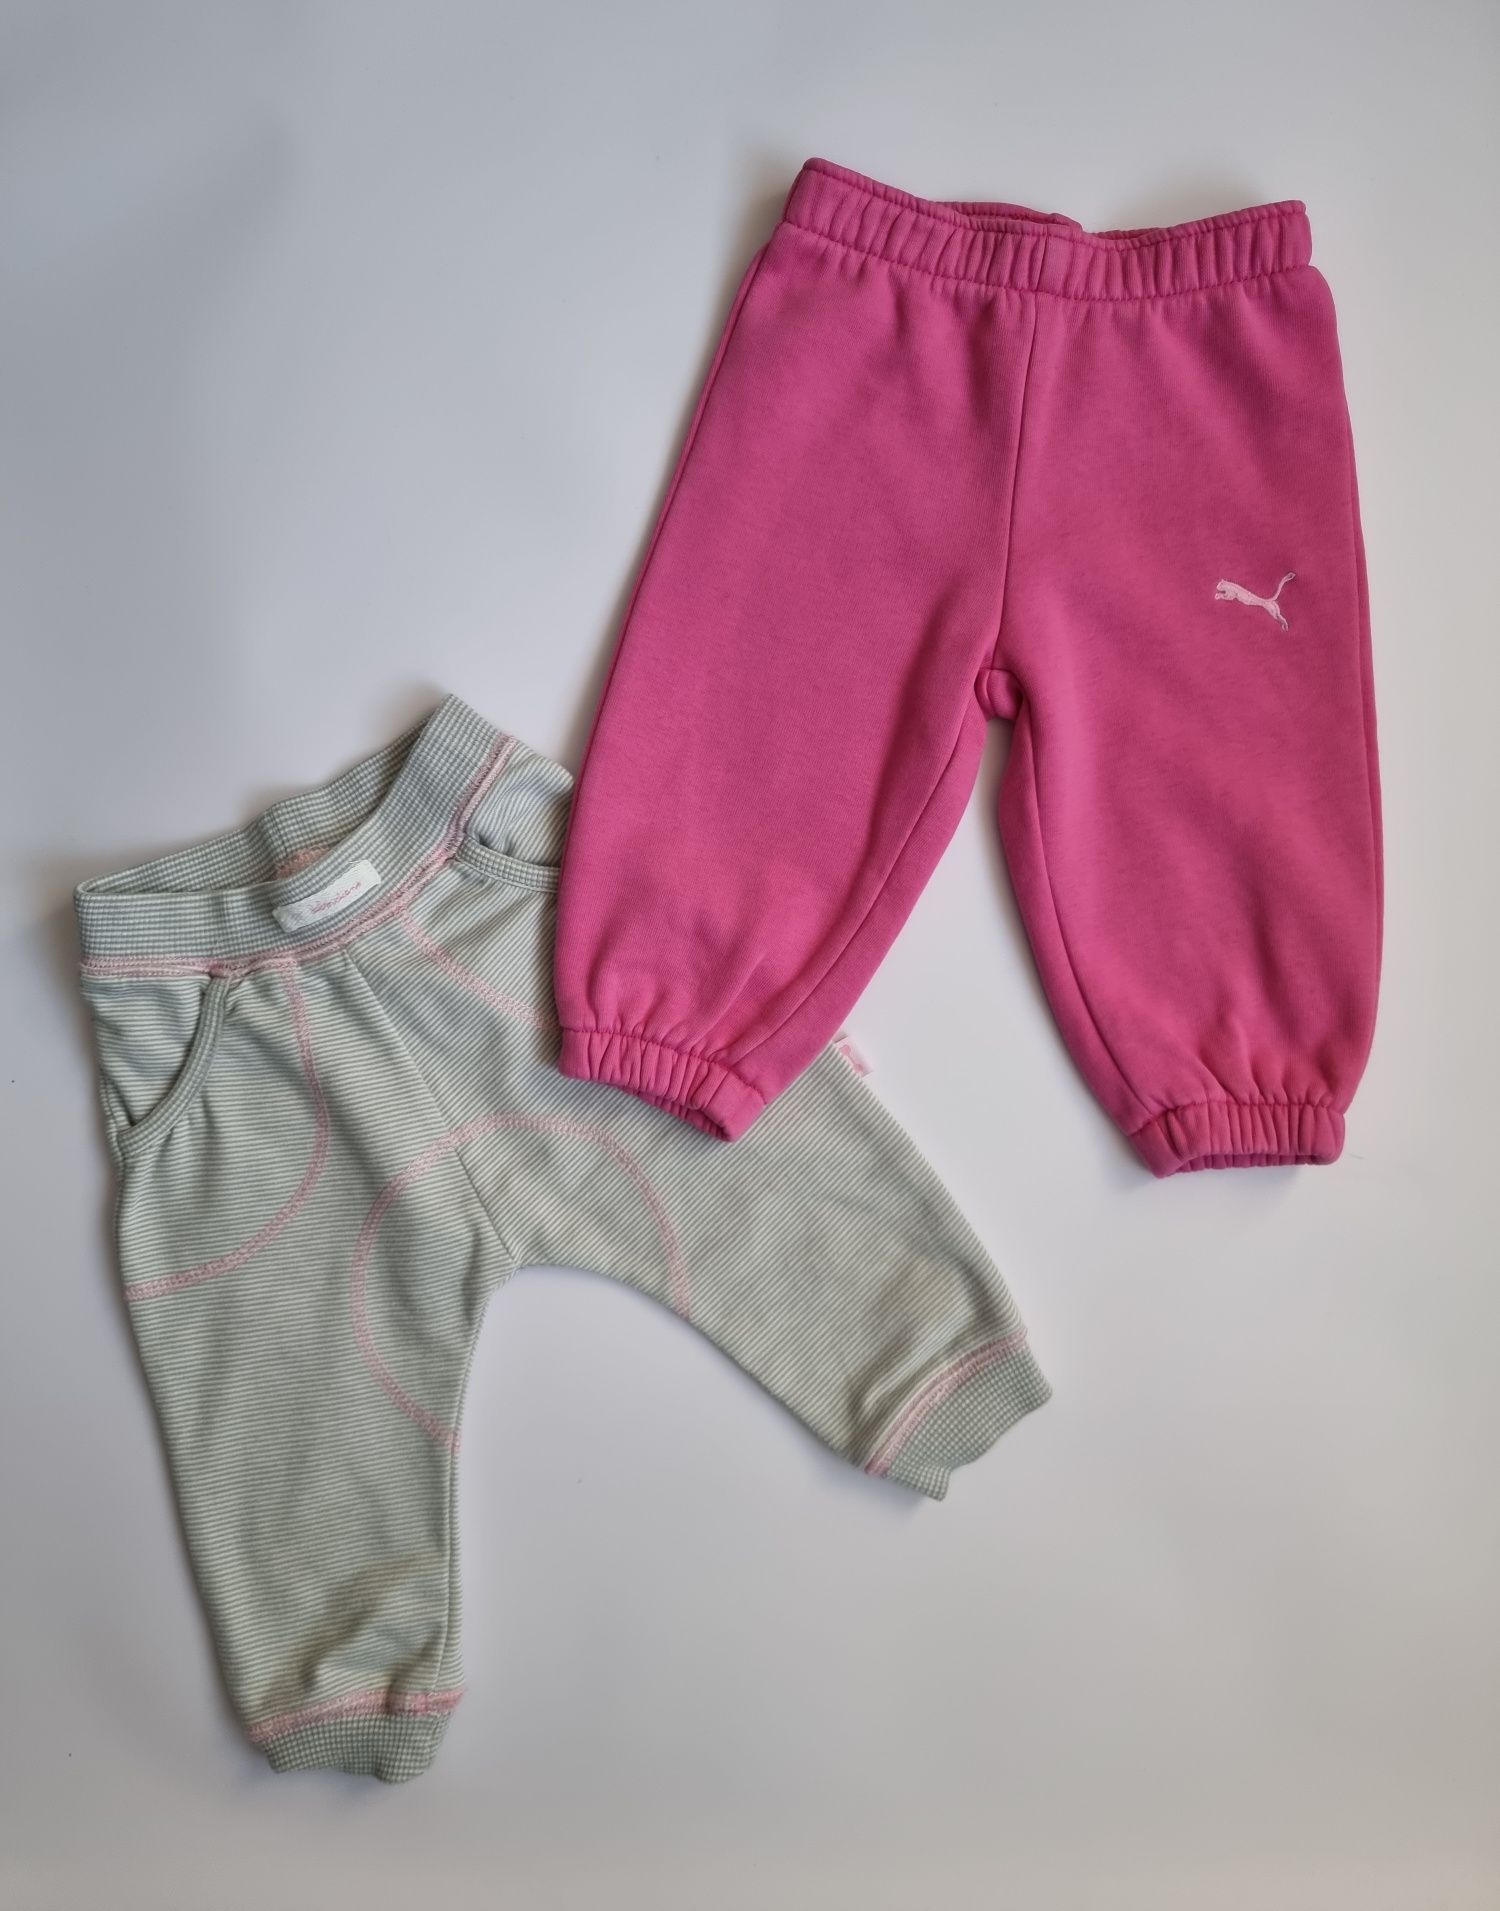 Spodnie dla dziewczynki szare i różowe rozmiar 68 puma